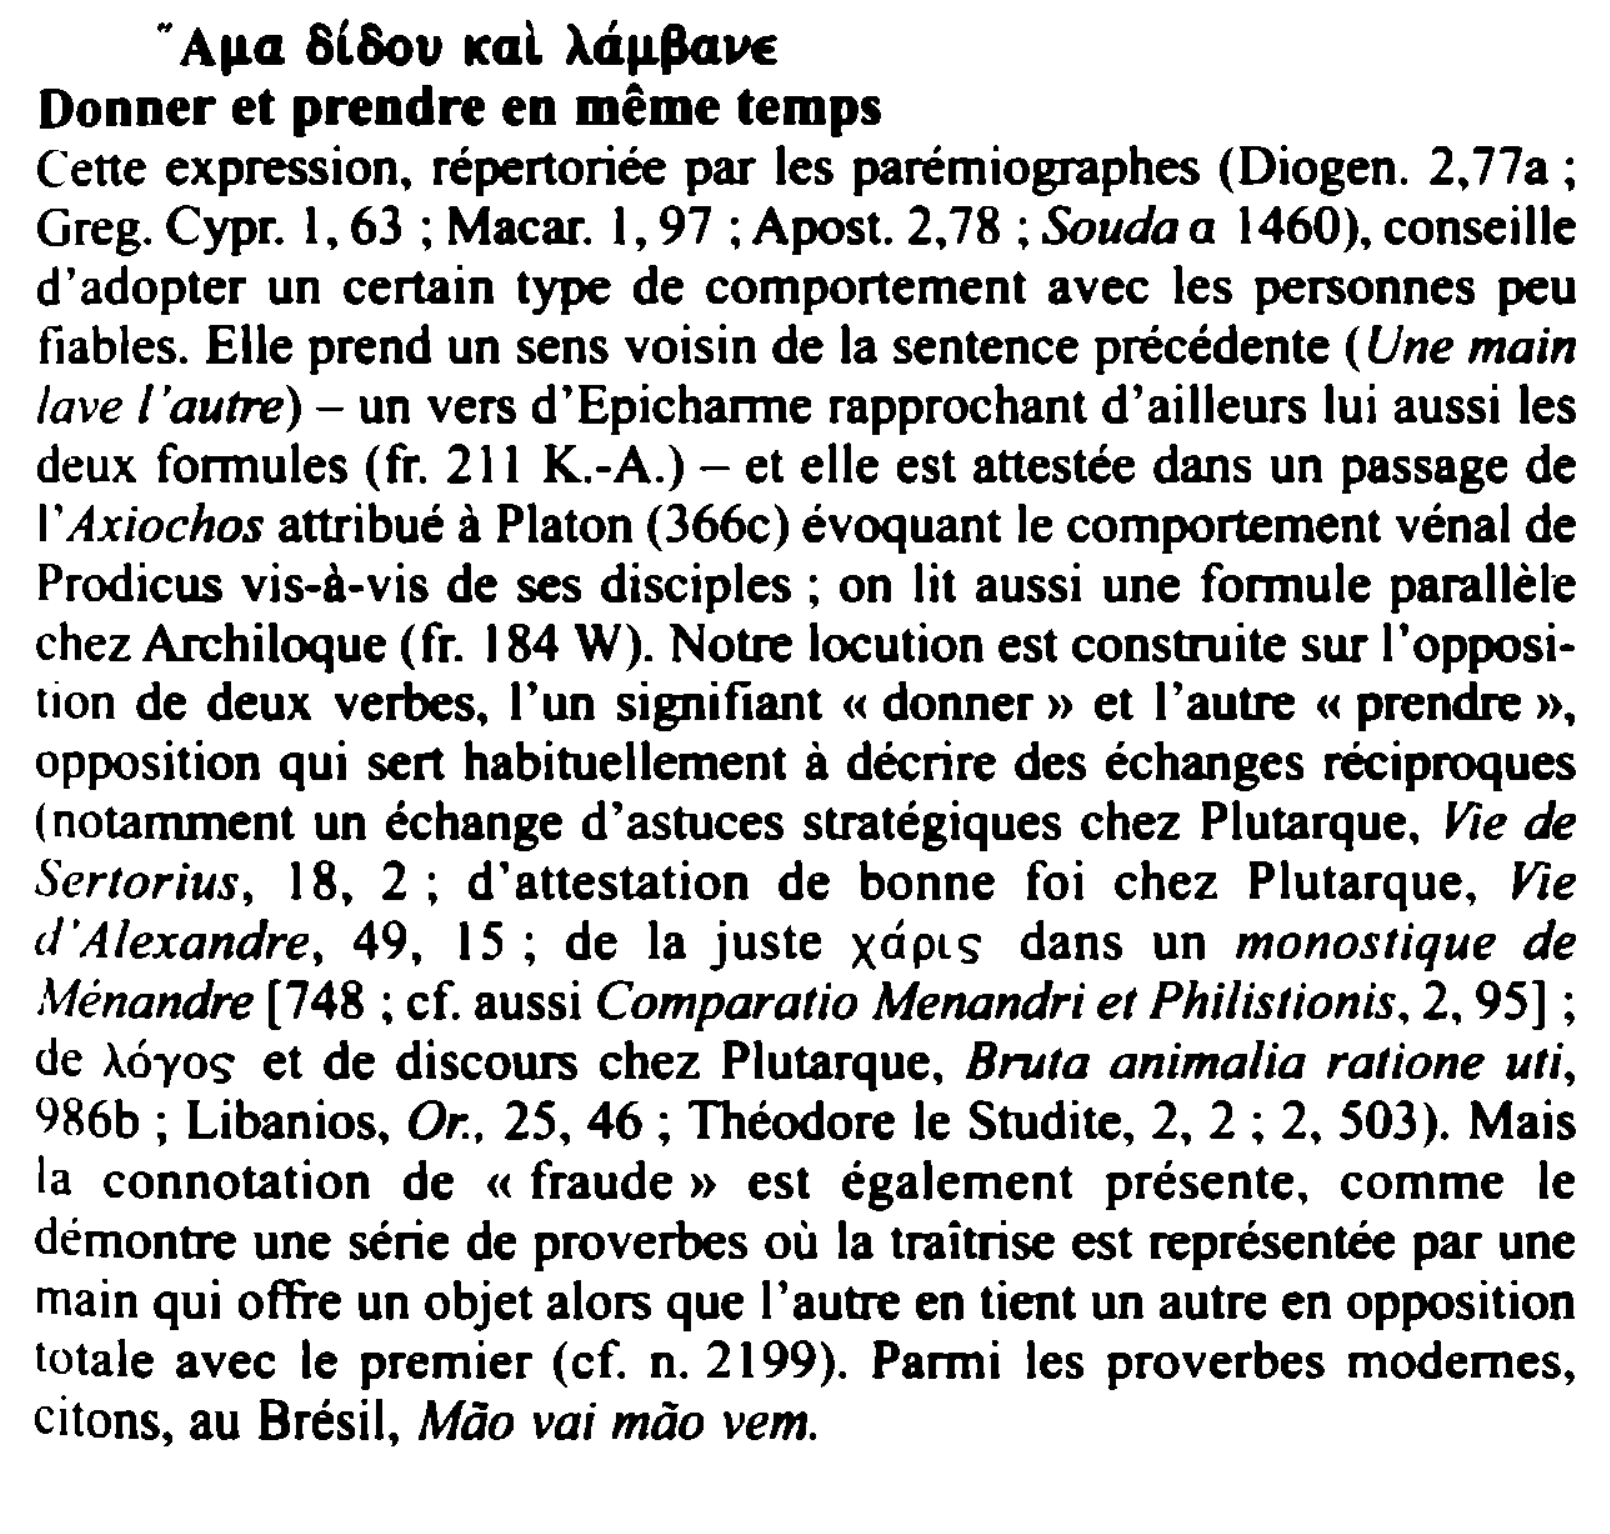 Prévisualisation du document A11a 8(8ou acal ).cillllaVE
Donner et prendre en même temps
ff

Cette expression, répertoriée par les parémiographes (Diogen. 2, 77a...